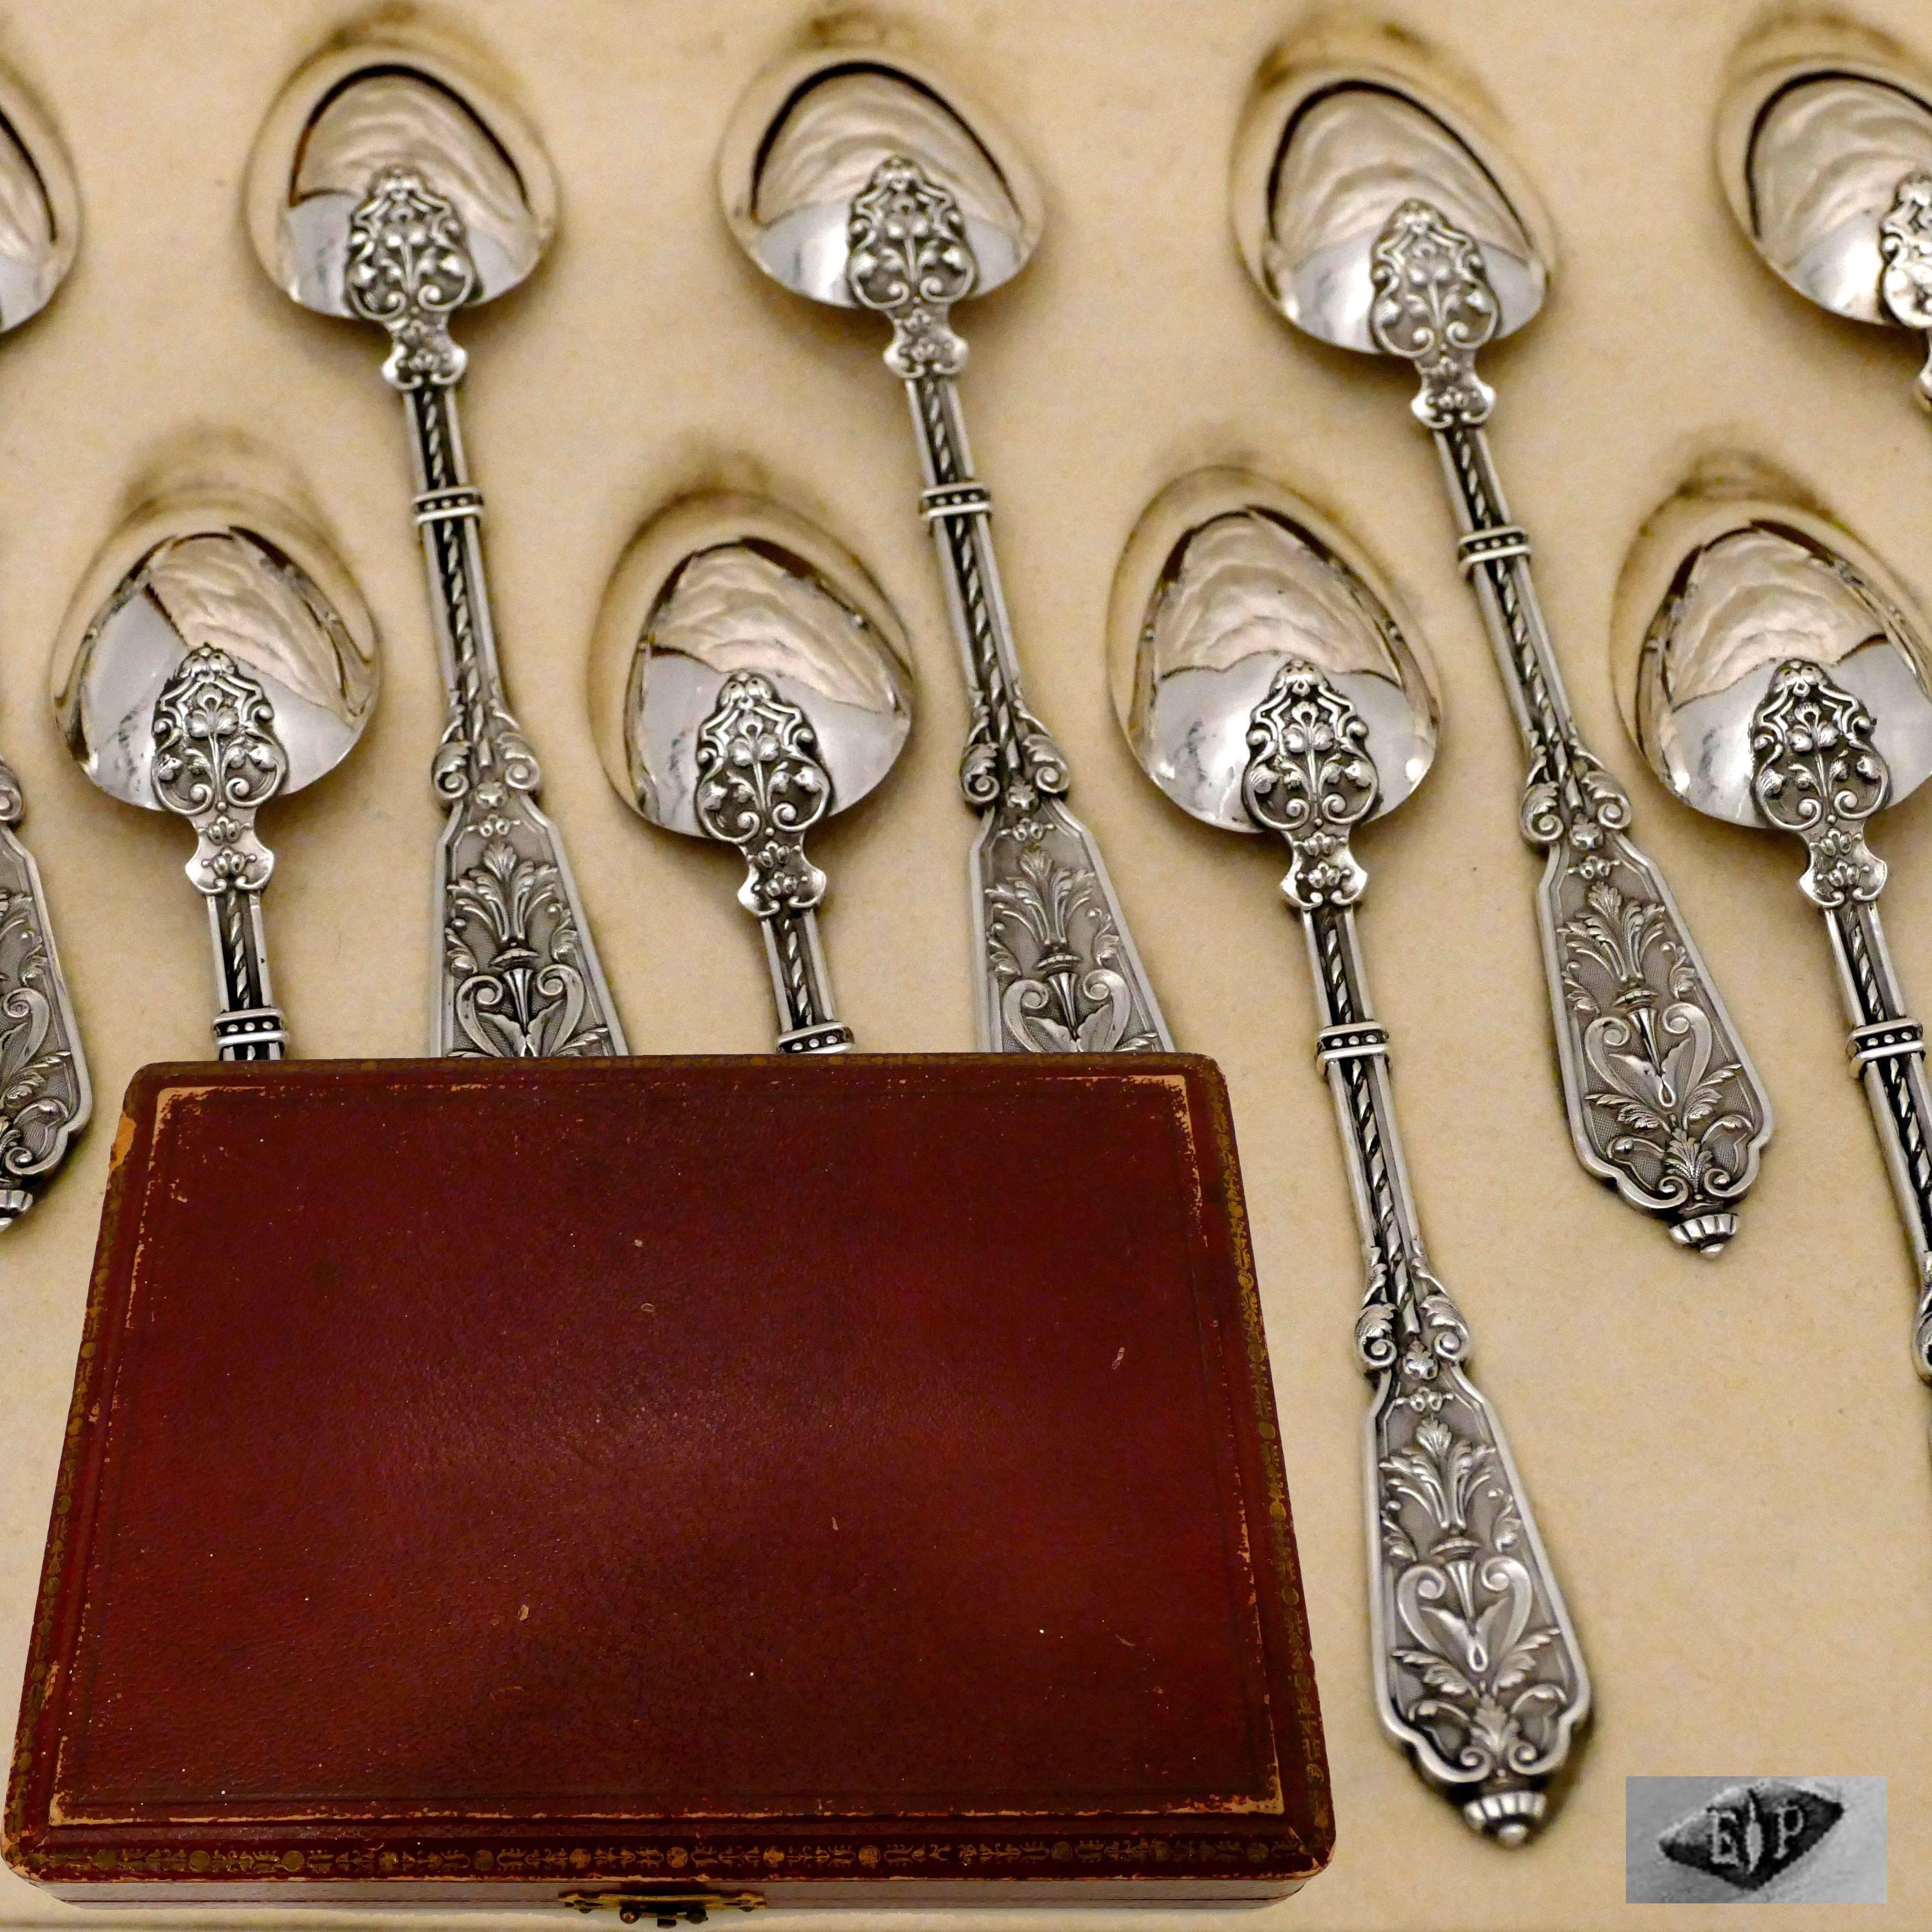 Puiforcat Rare French Sterling Silver Tea Dessert Spoons Set, Box, Renaissance For Sale 1